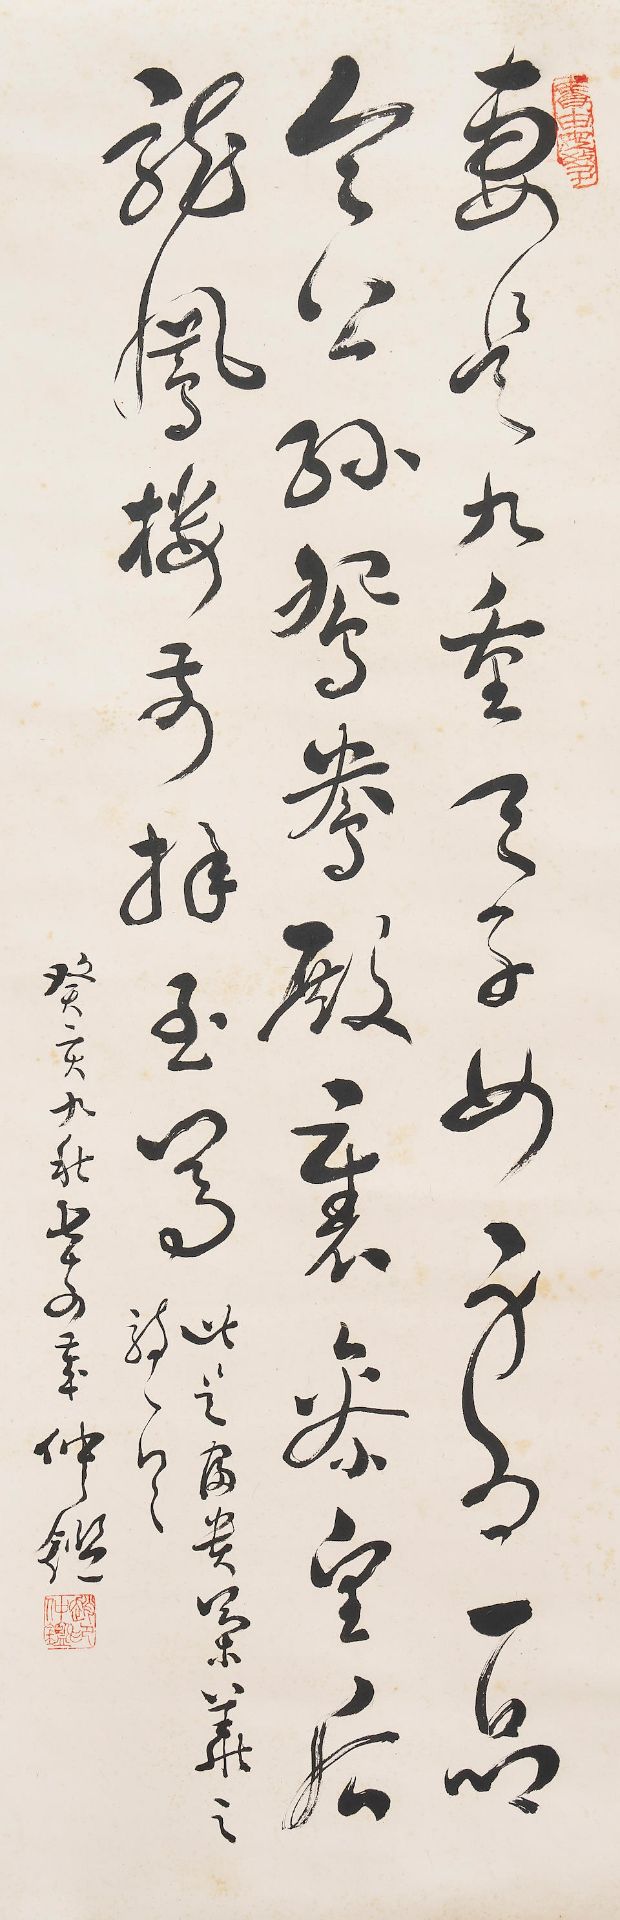 Zhao Zhongjian (20th century) Calligraphy in Grass Style